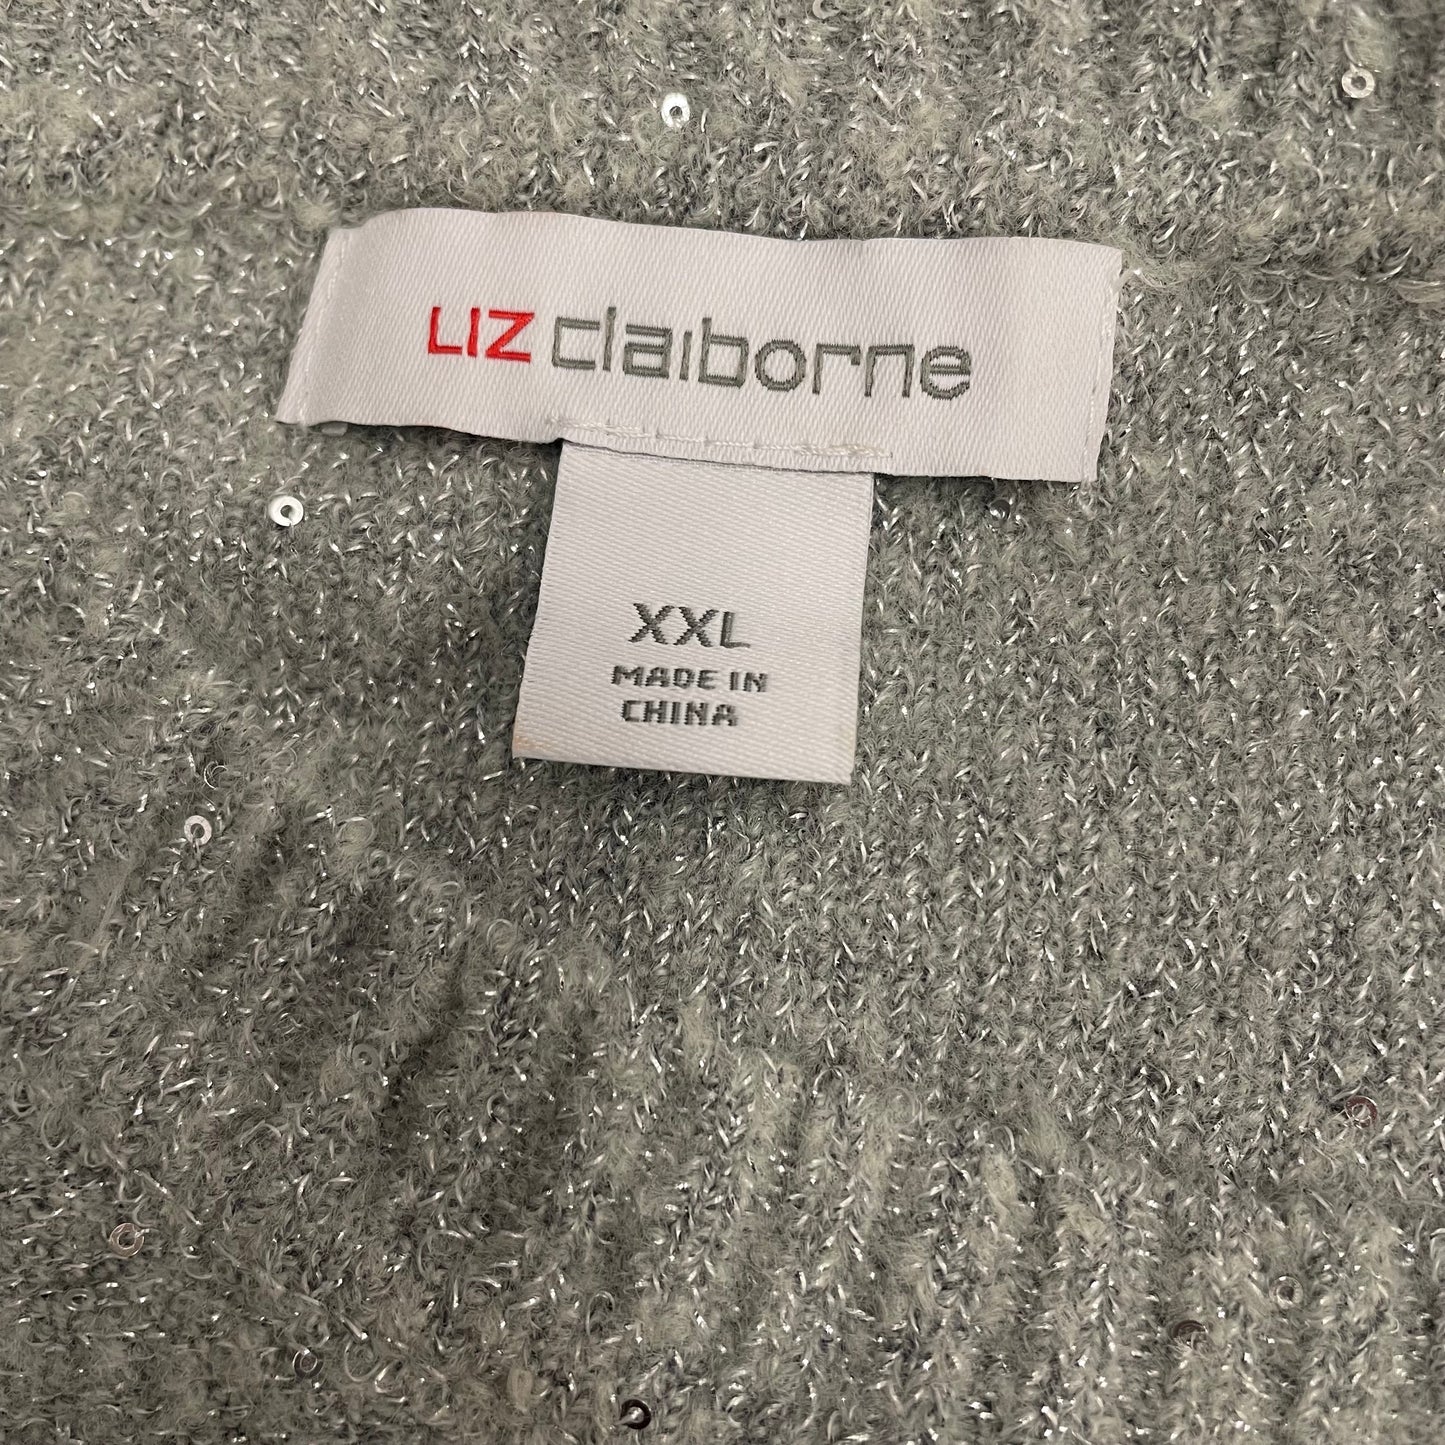 Sweater By Liz Claiborne O  Size: Xxl